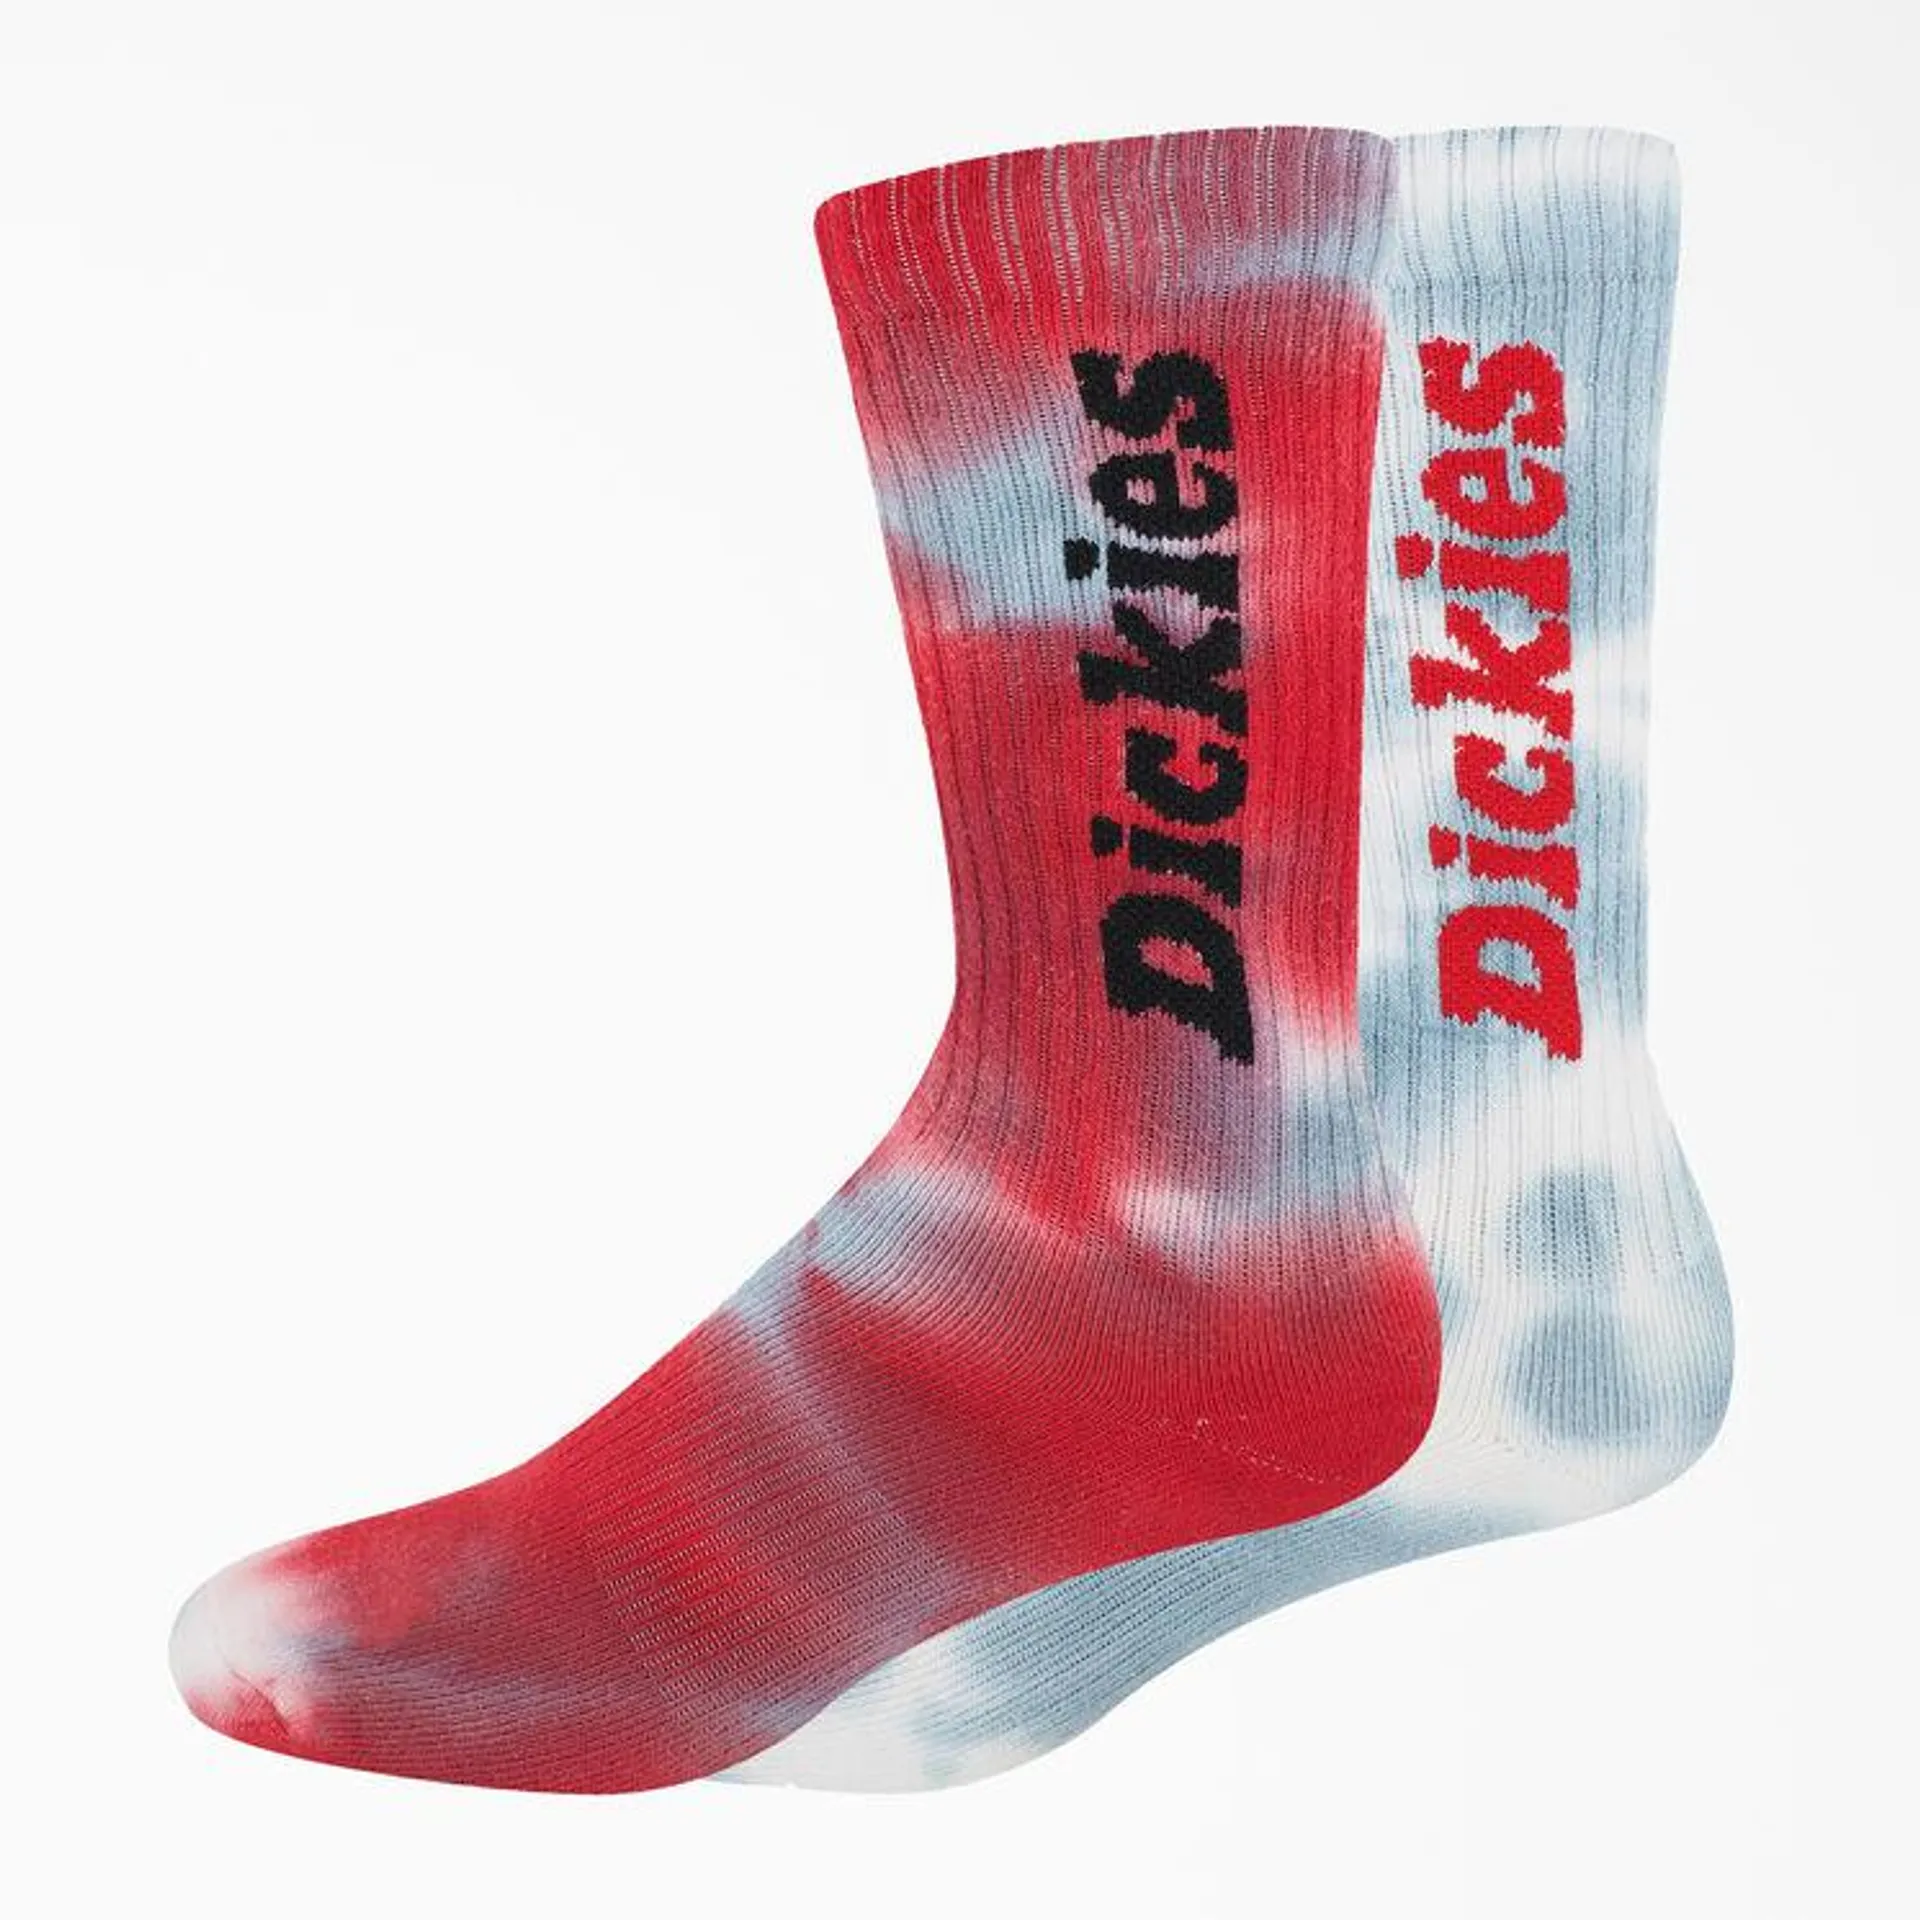 Tie-Dye Crew Socks, Size 6-12, 2-Pack, Tie-Dye